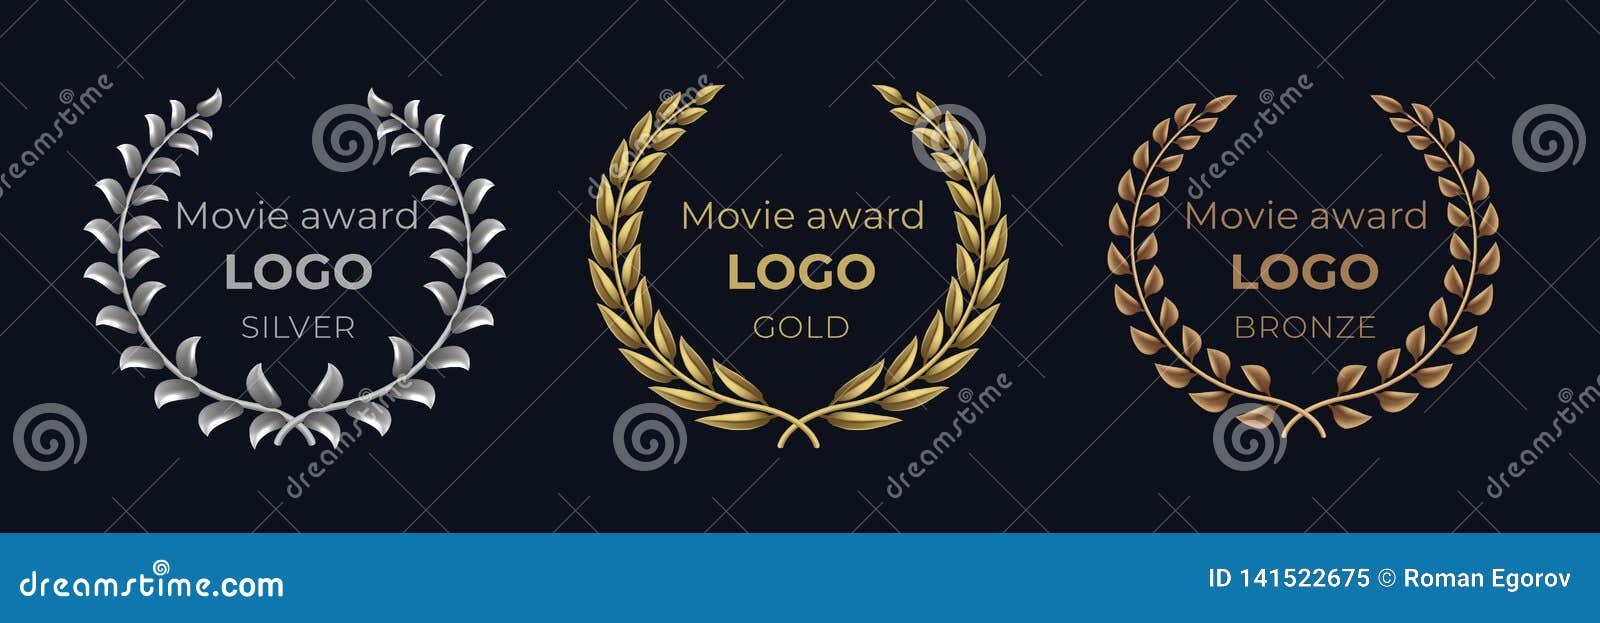 movie award logo. laurel golden emblems, winner reward foliage banner, show prize luxury concept.  golden wreath